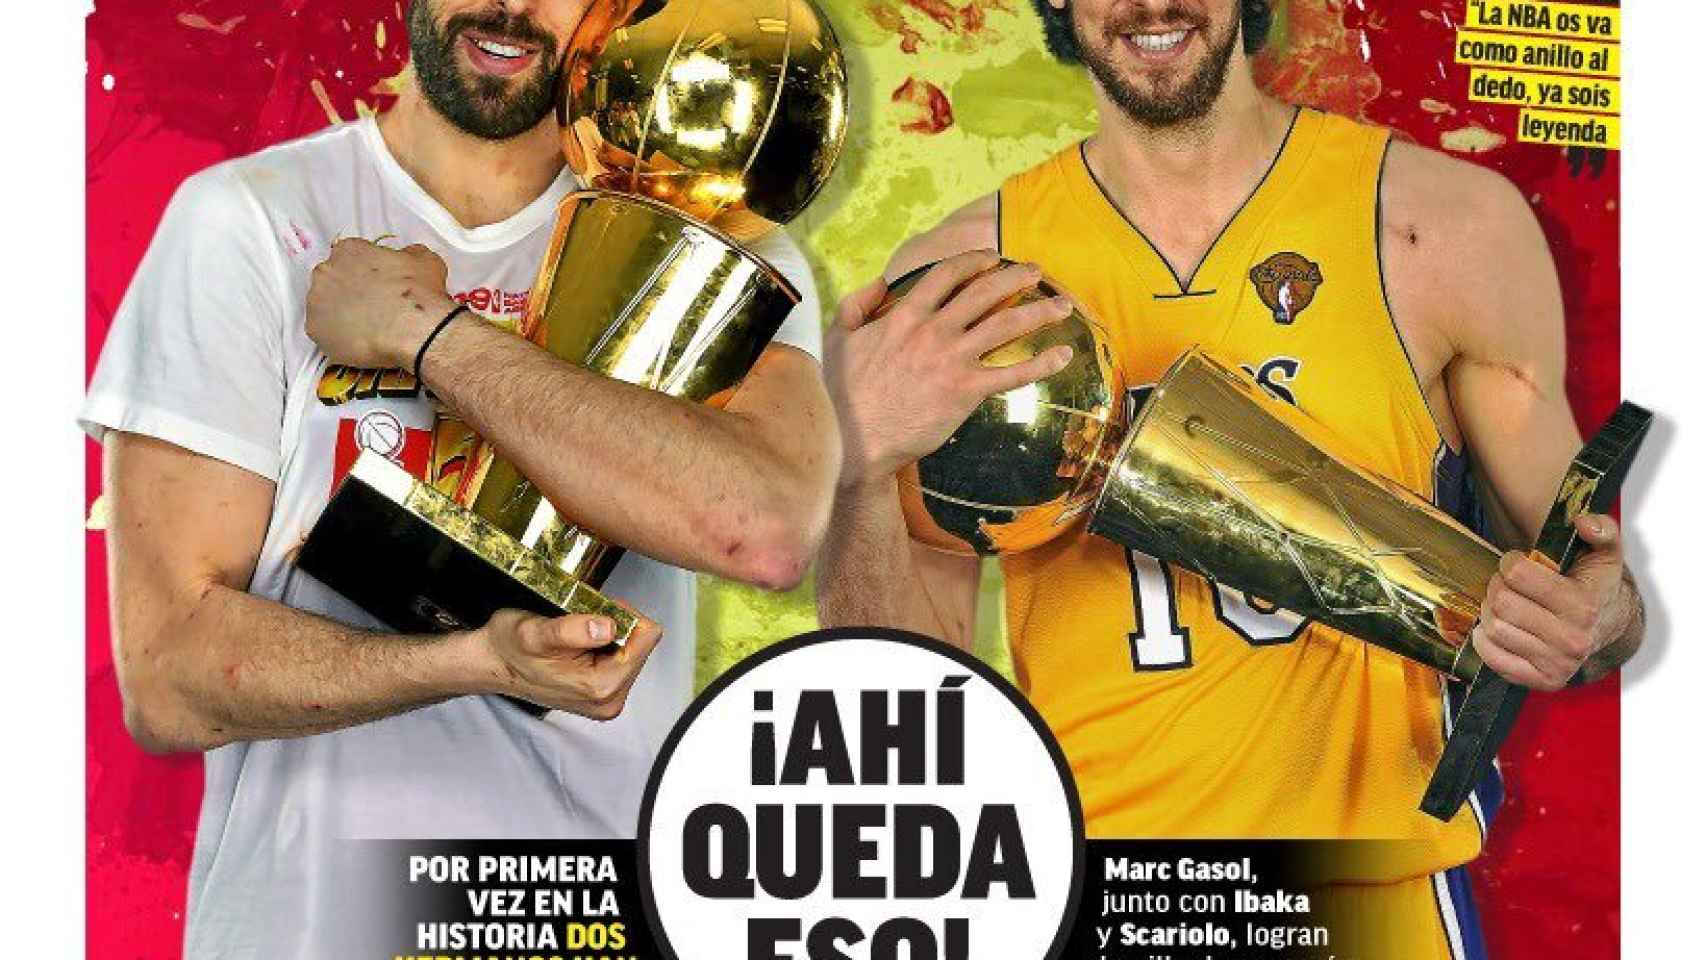 La portada del diario MARCA (15/06/2019)